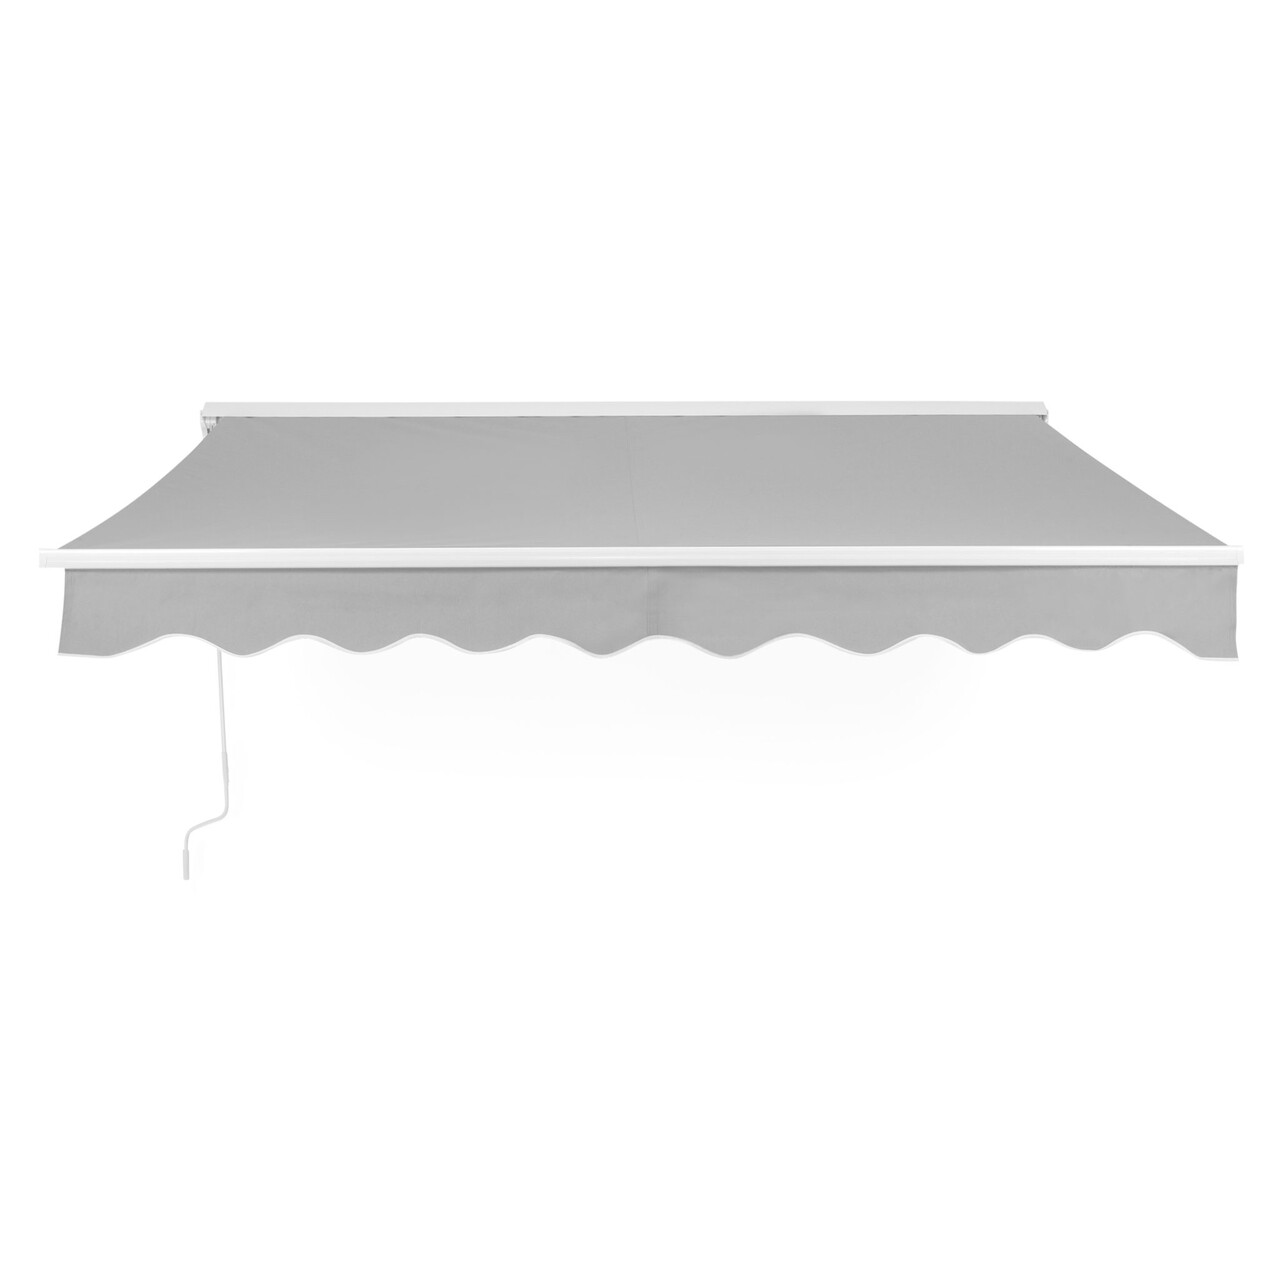 Burgas Fali napellenző, L.295 l.250 cm, alumínium/acél/poliészter, fehér/szürke